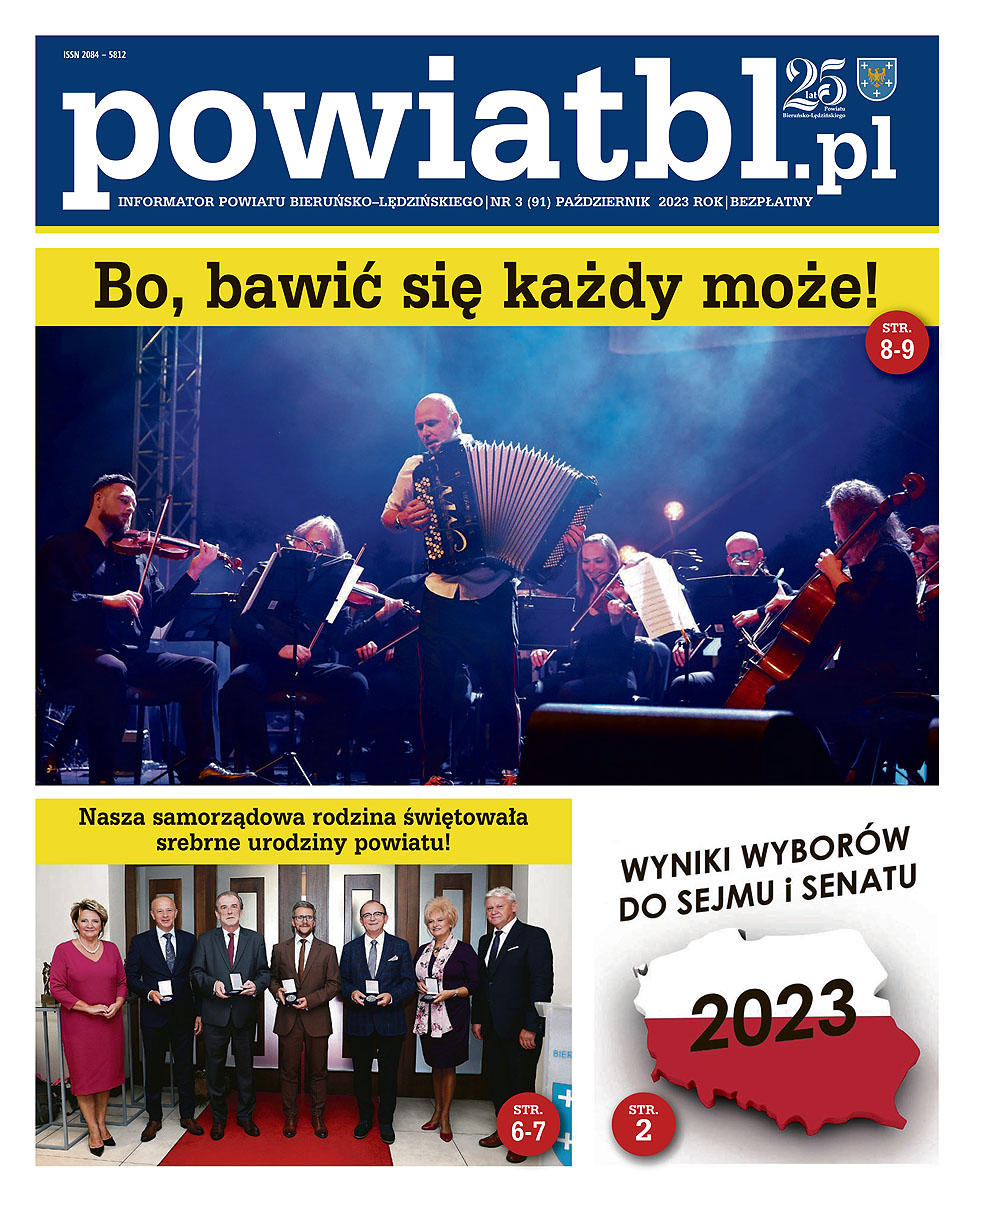 pierwsza strona kwartalnika powiatbl.pl